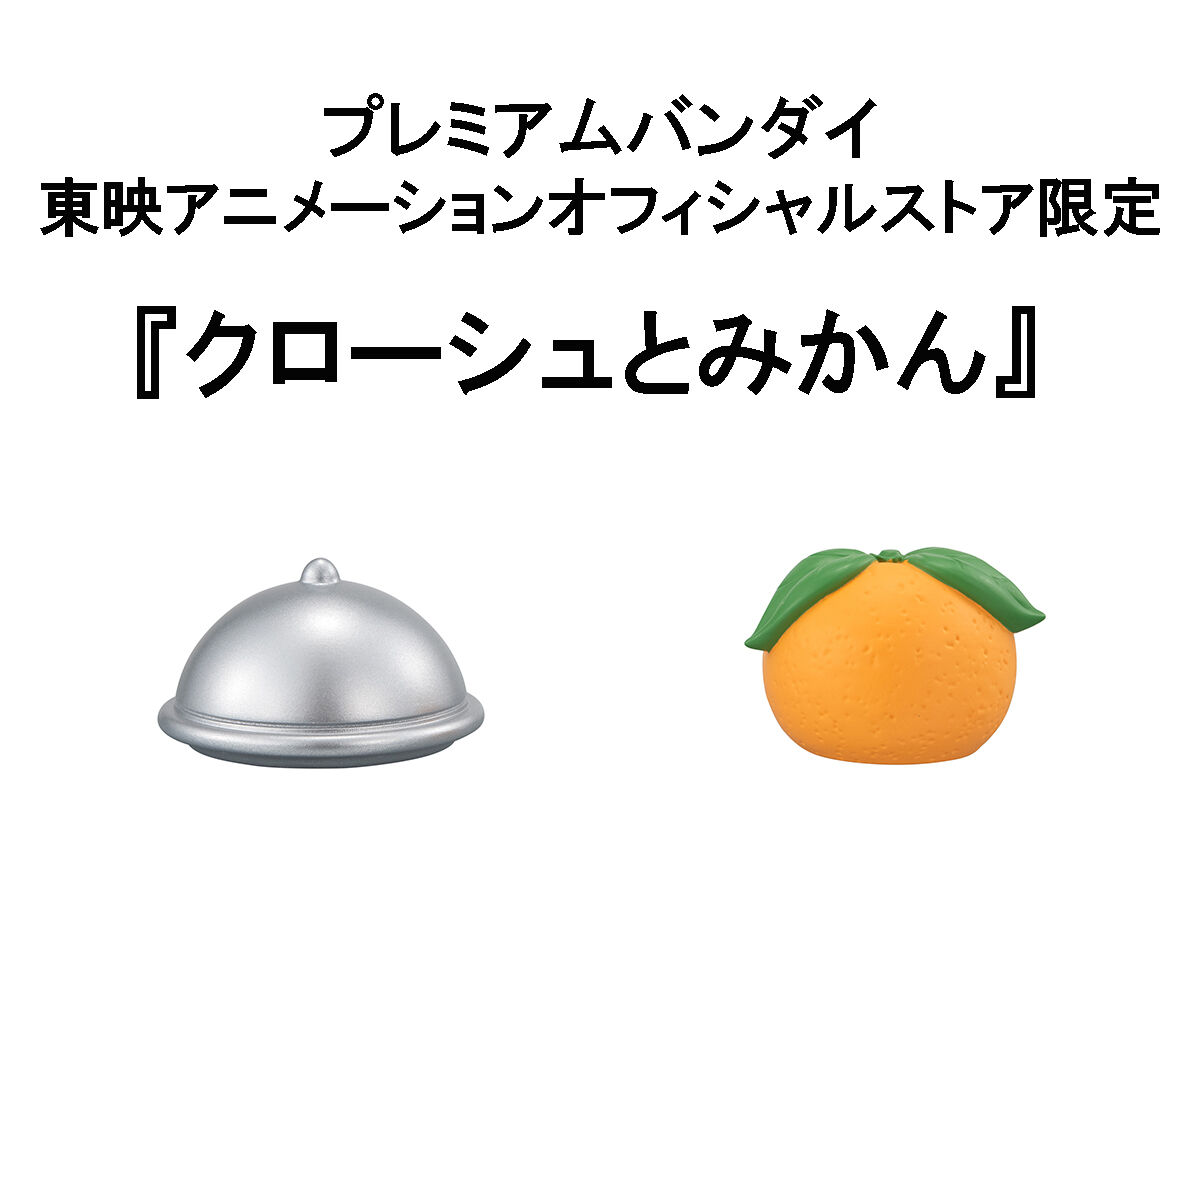 「るかっぷ ONE PIECE ナミ」のフィギュア画像